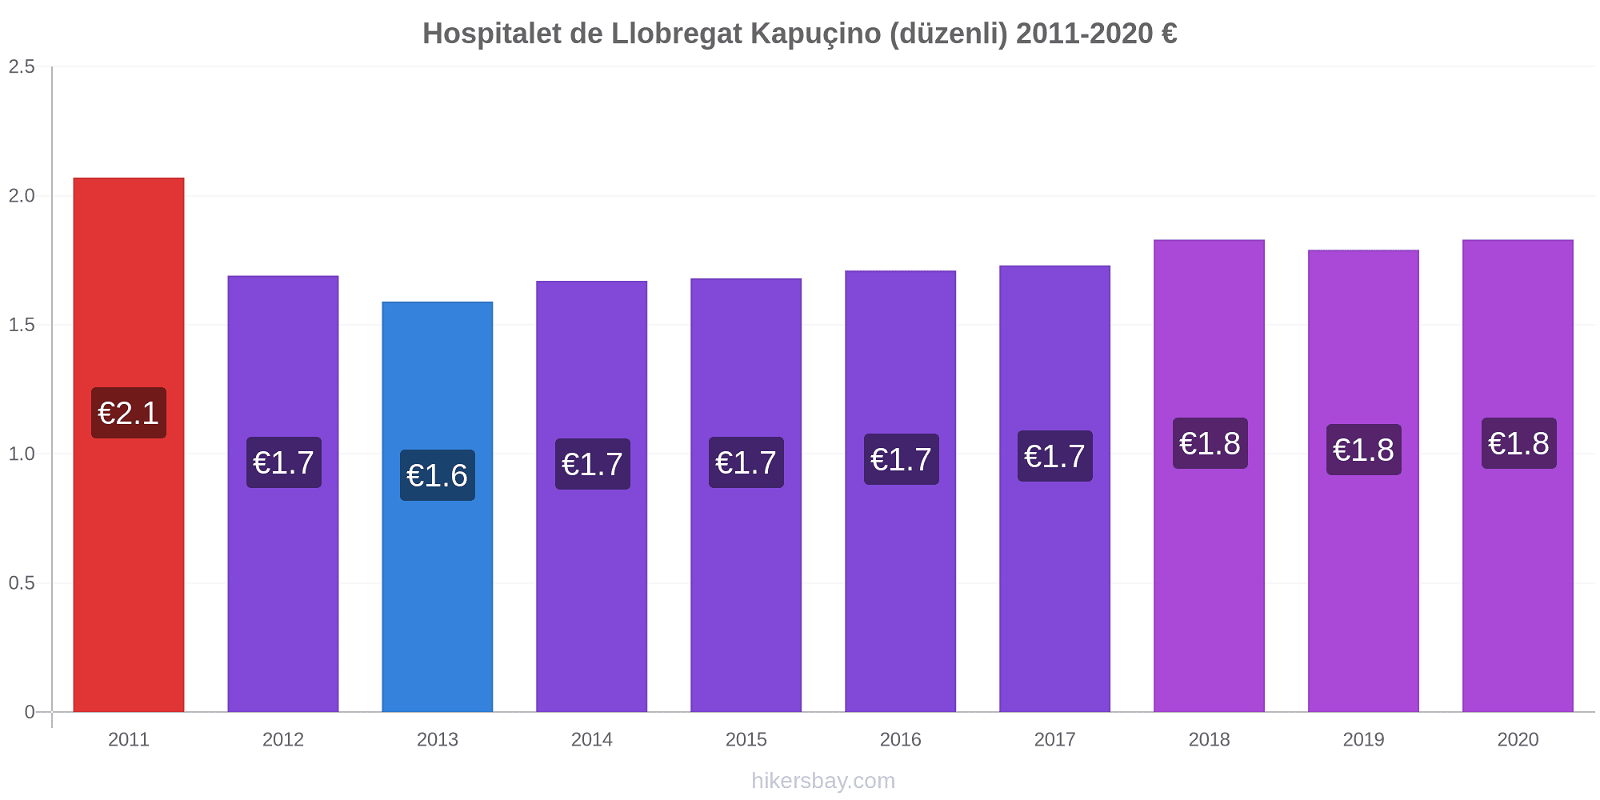 Hospitalet de Llobregat fiyat değişiklikleri Kapuçino (düzenli) hikersbay.com